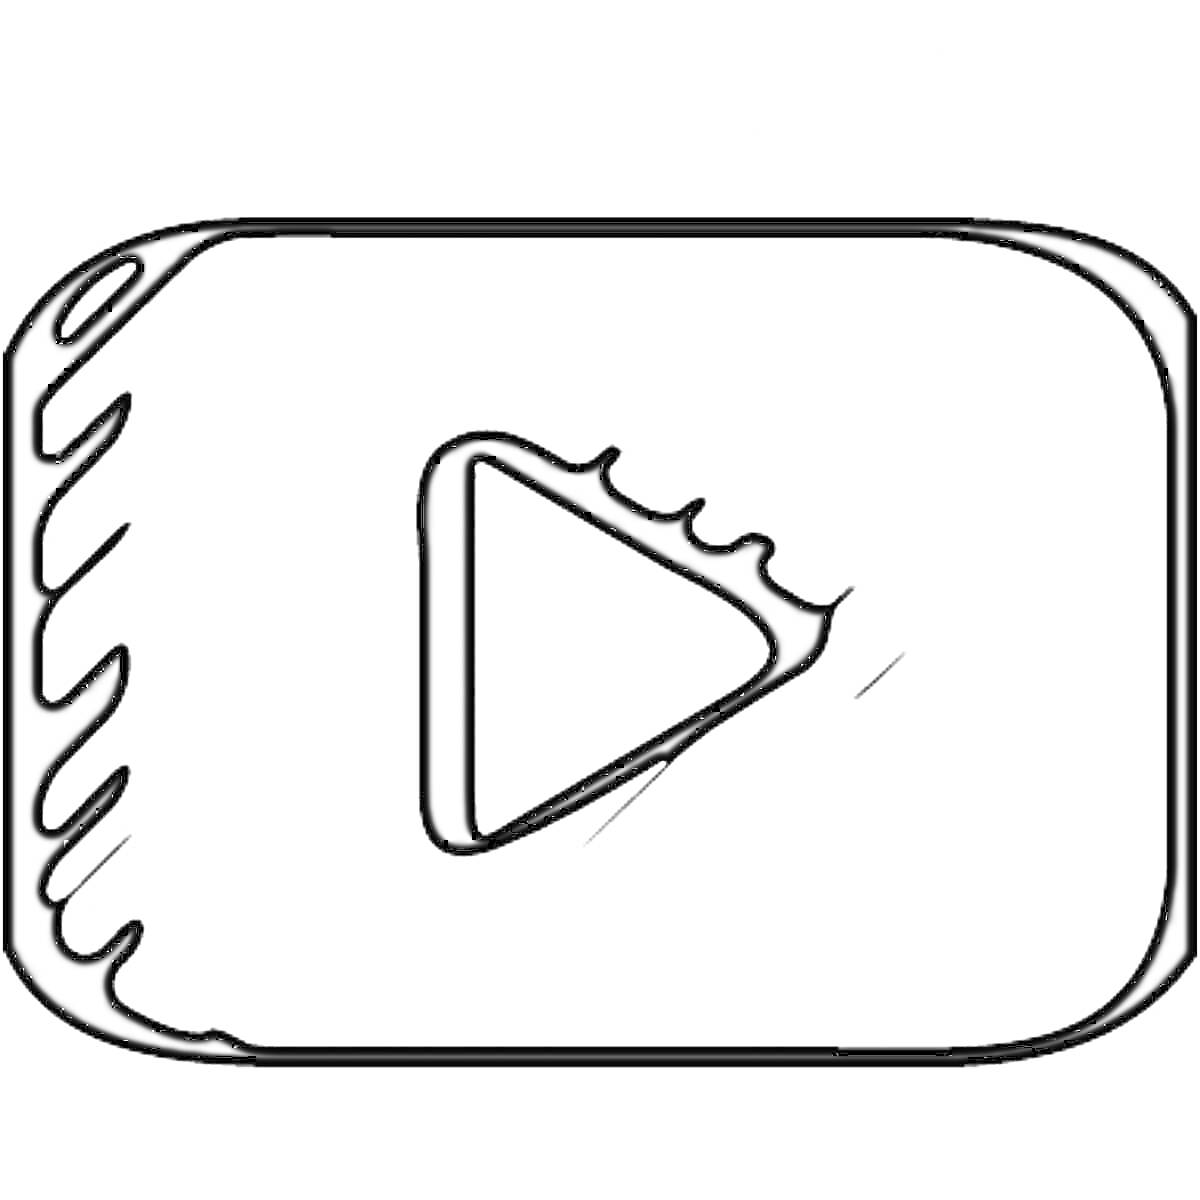 Раскраска Логотип Ютуб с кнопкой воспроизведения